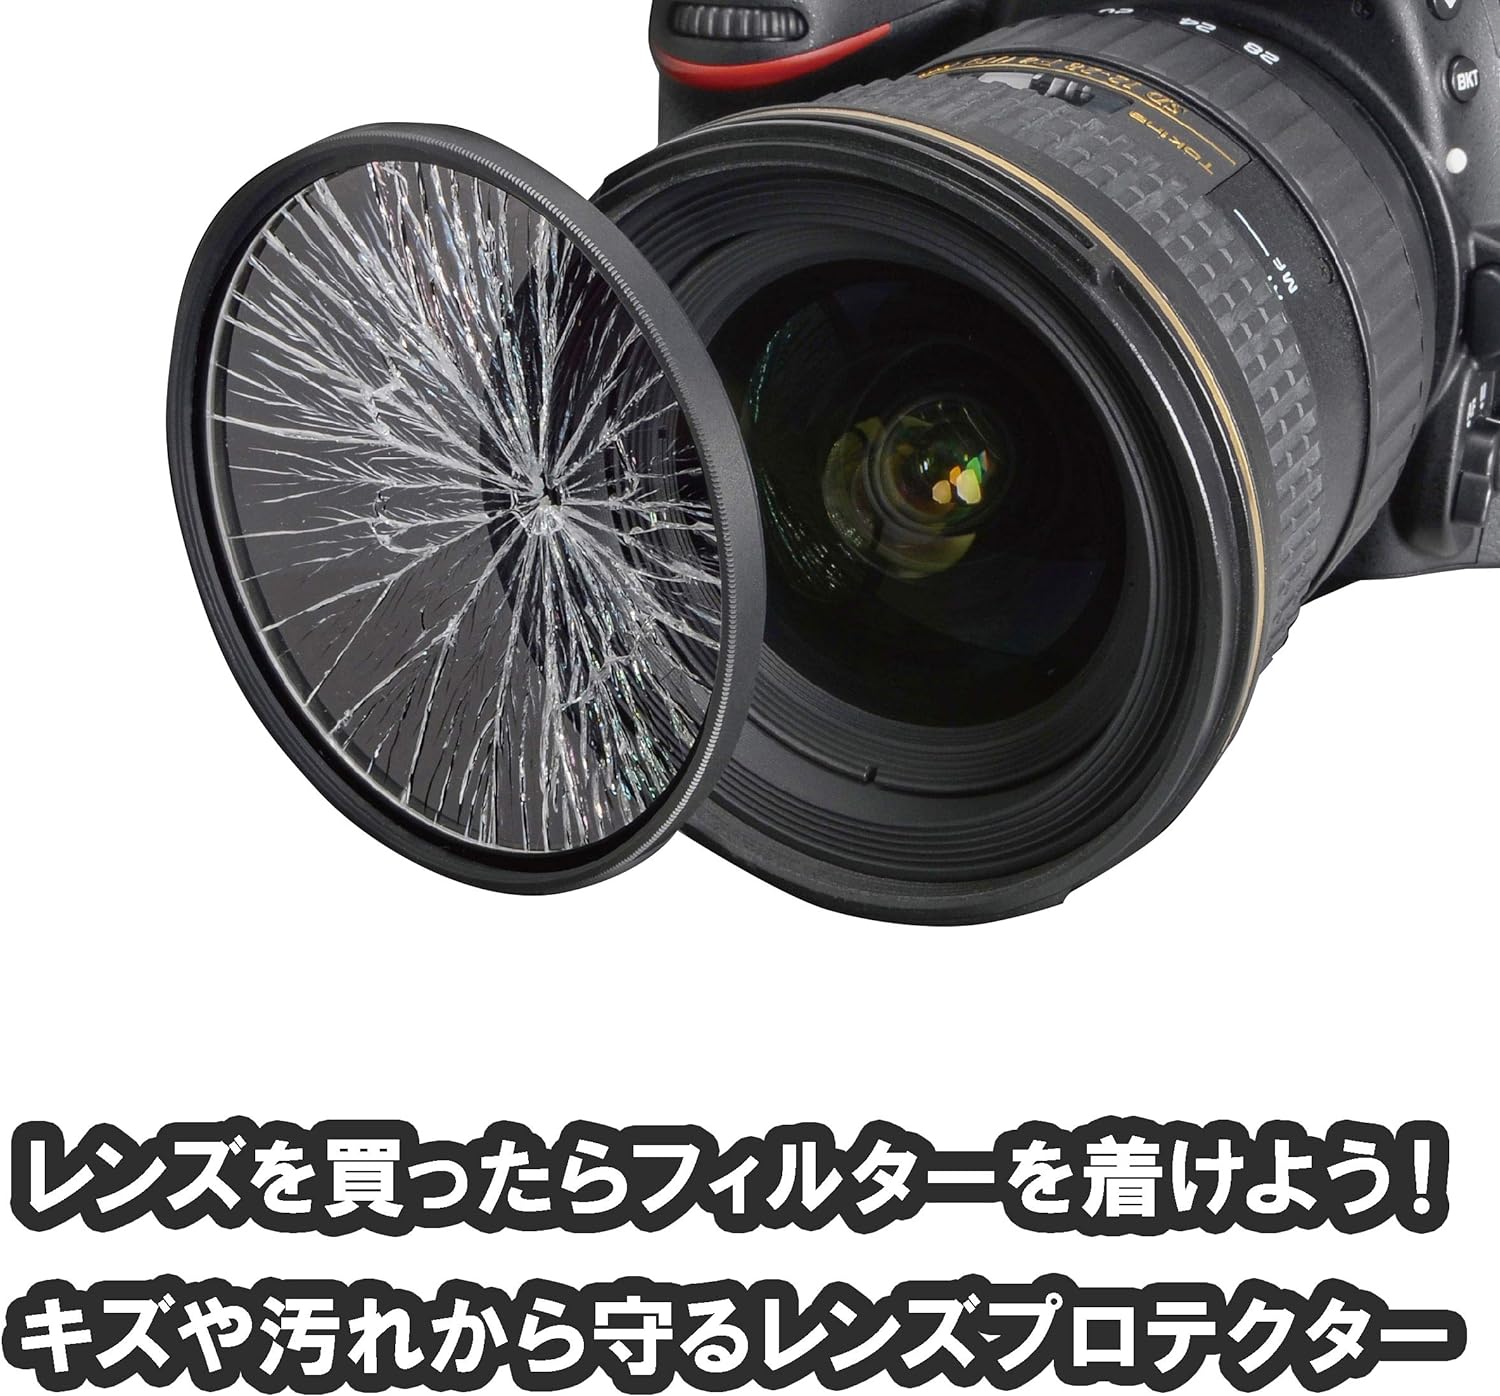 ケンコー 40.5mm レンズフィルター PRO1D プロテクター